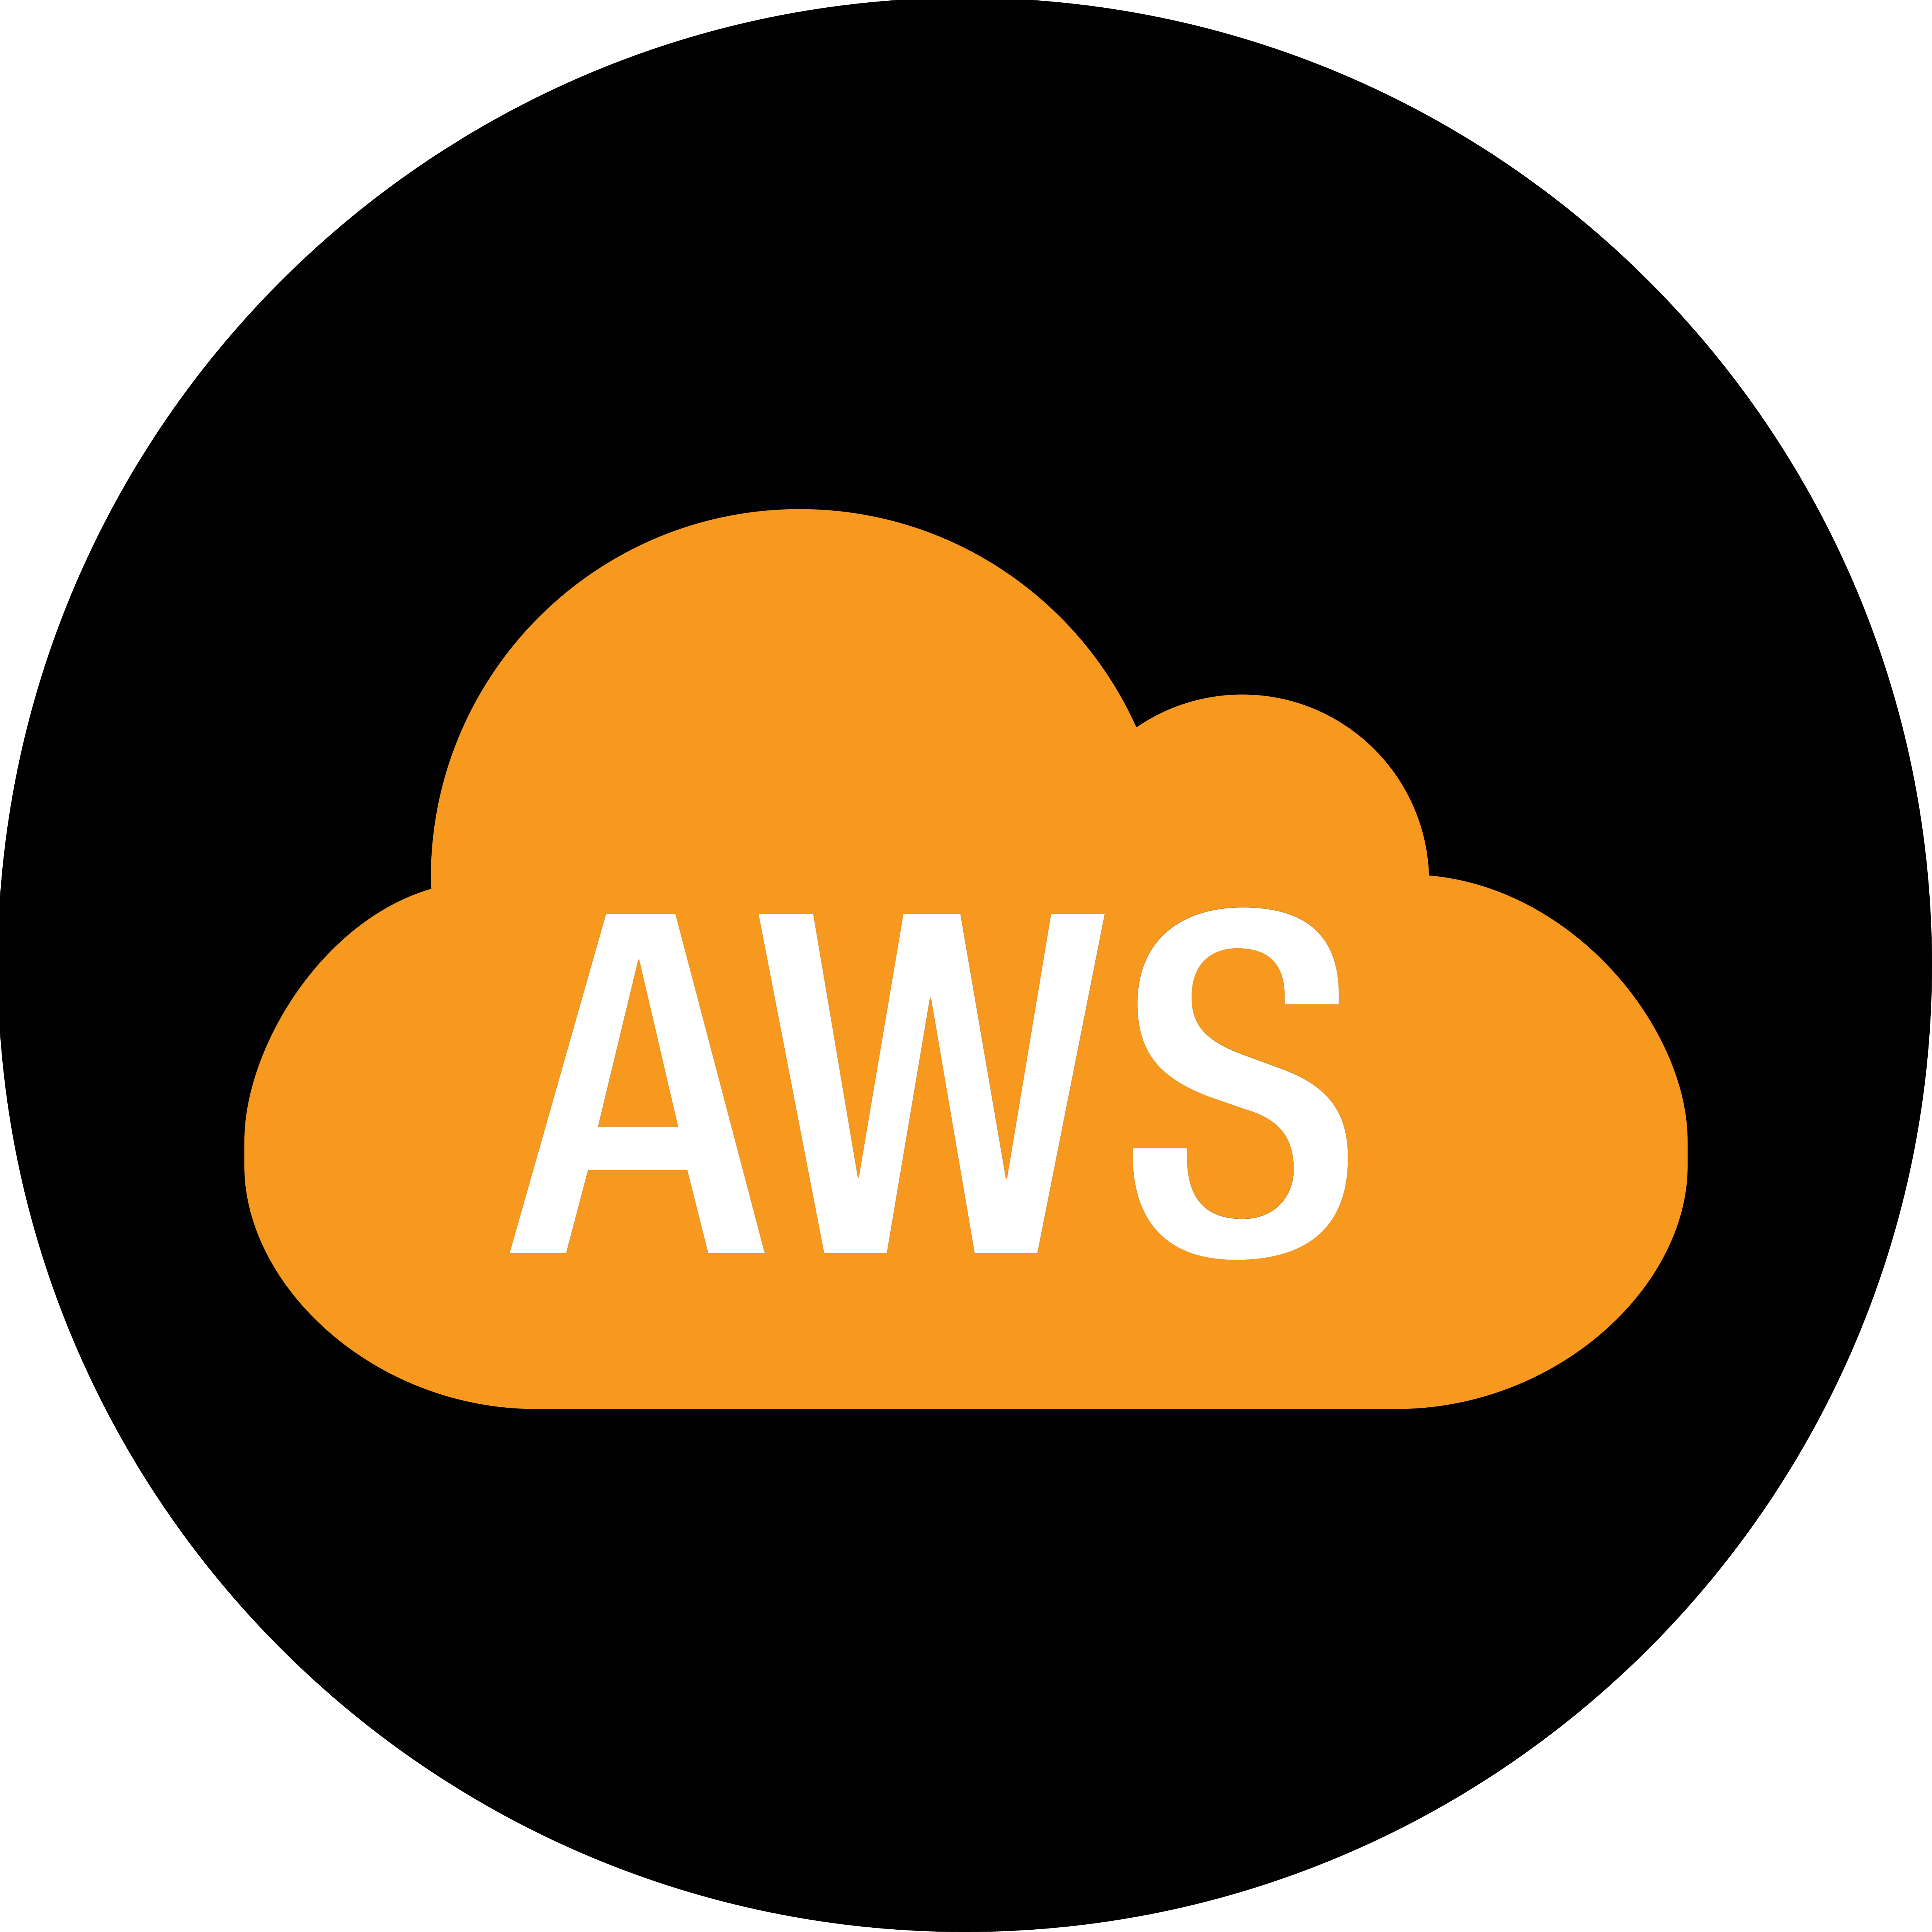 Amazon AWS Logo Transparent Picture